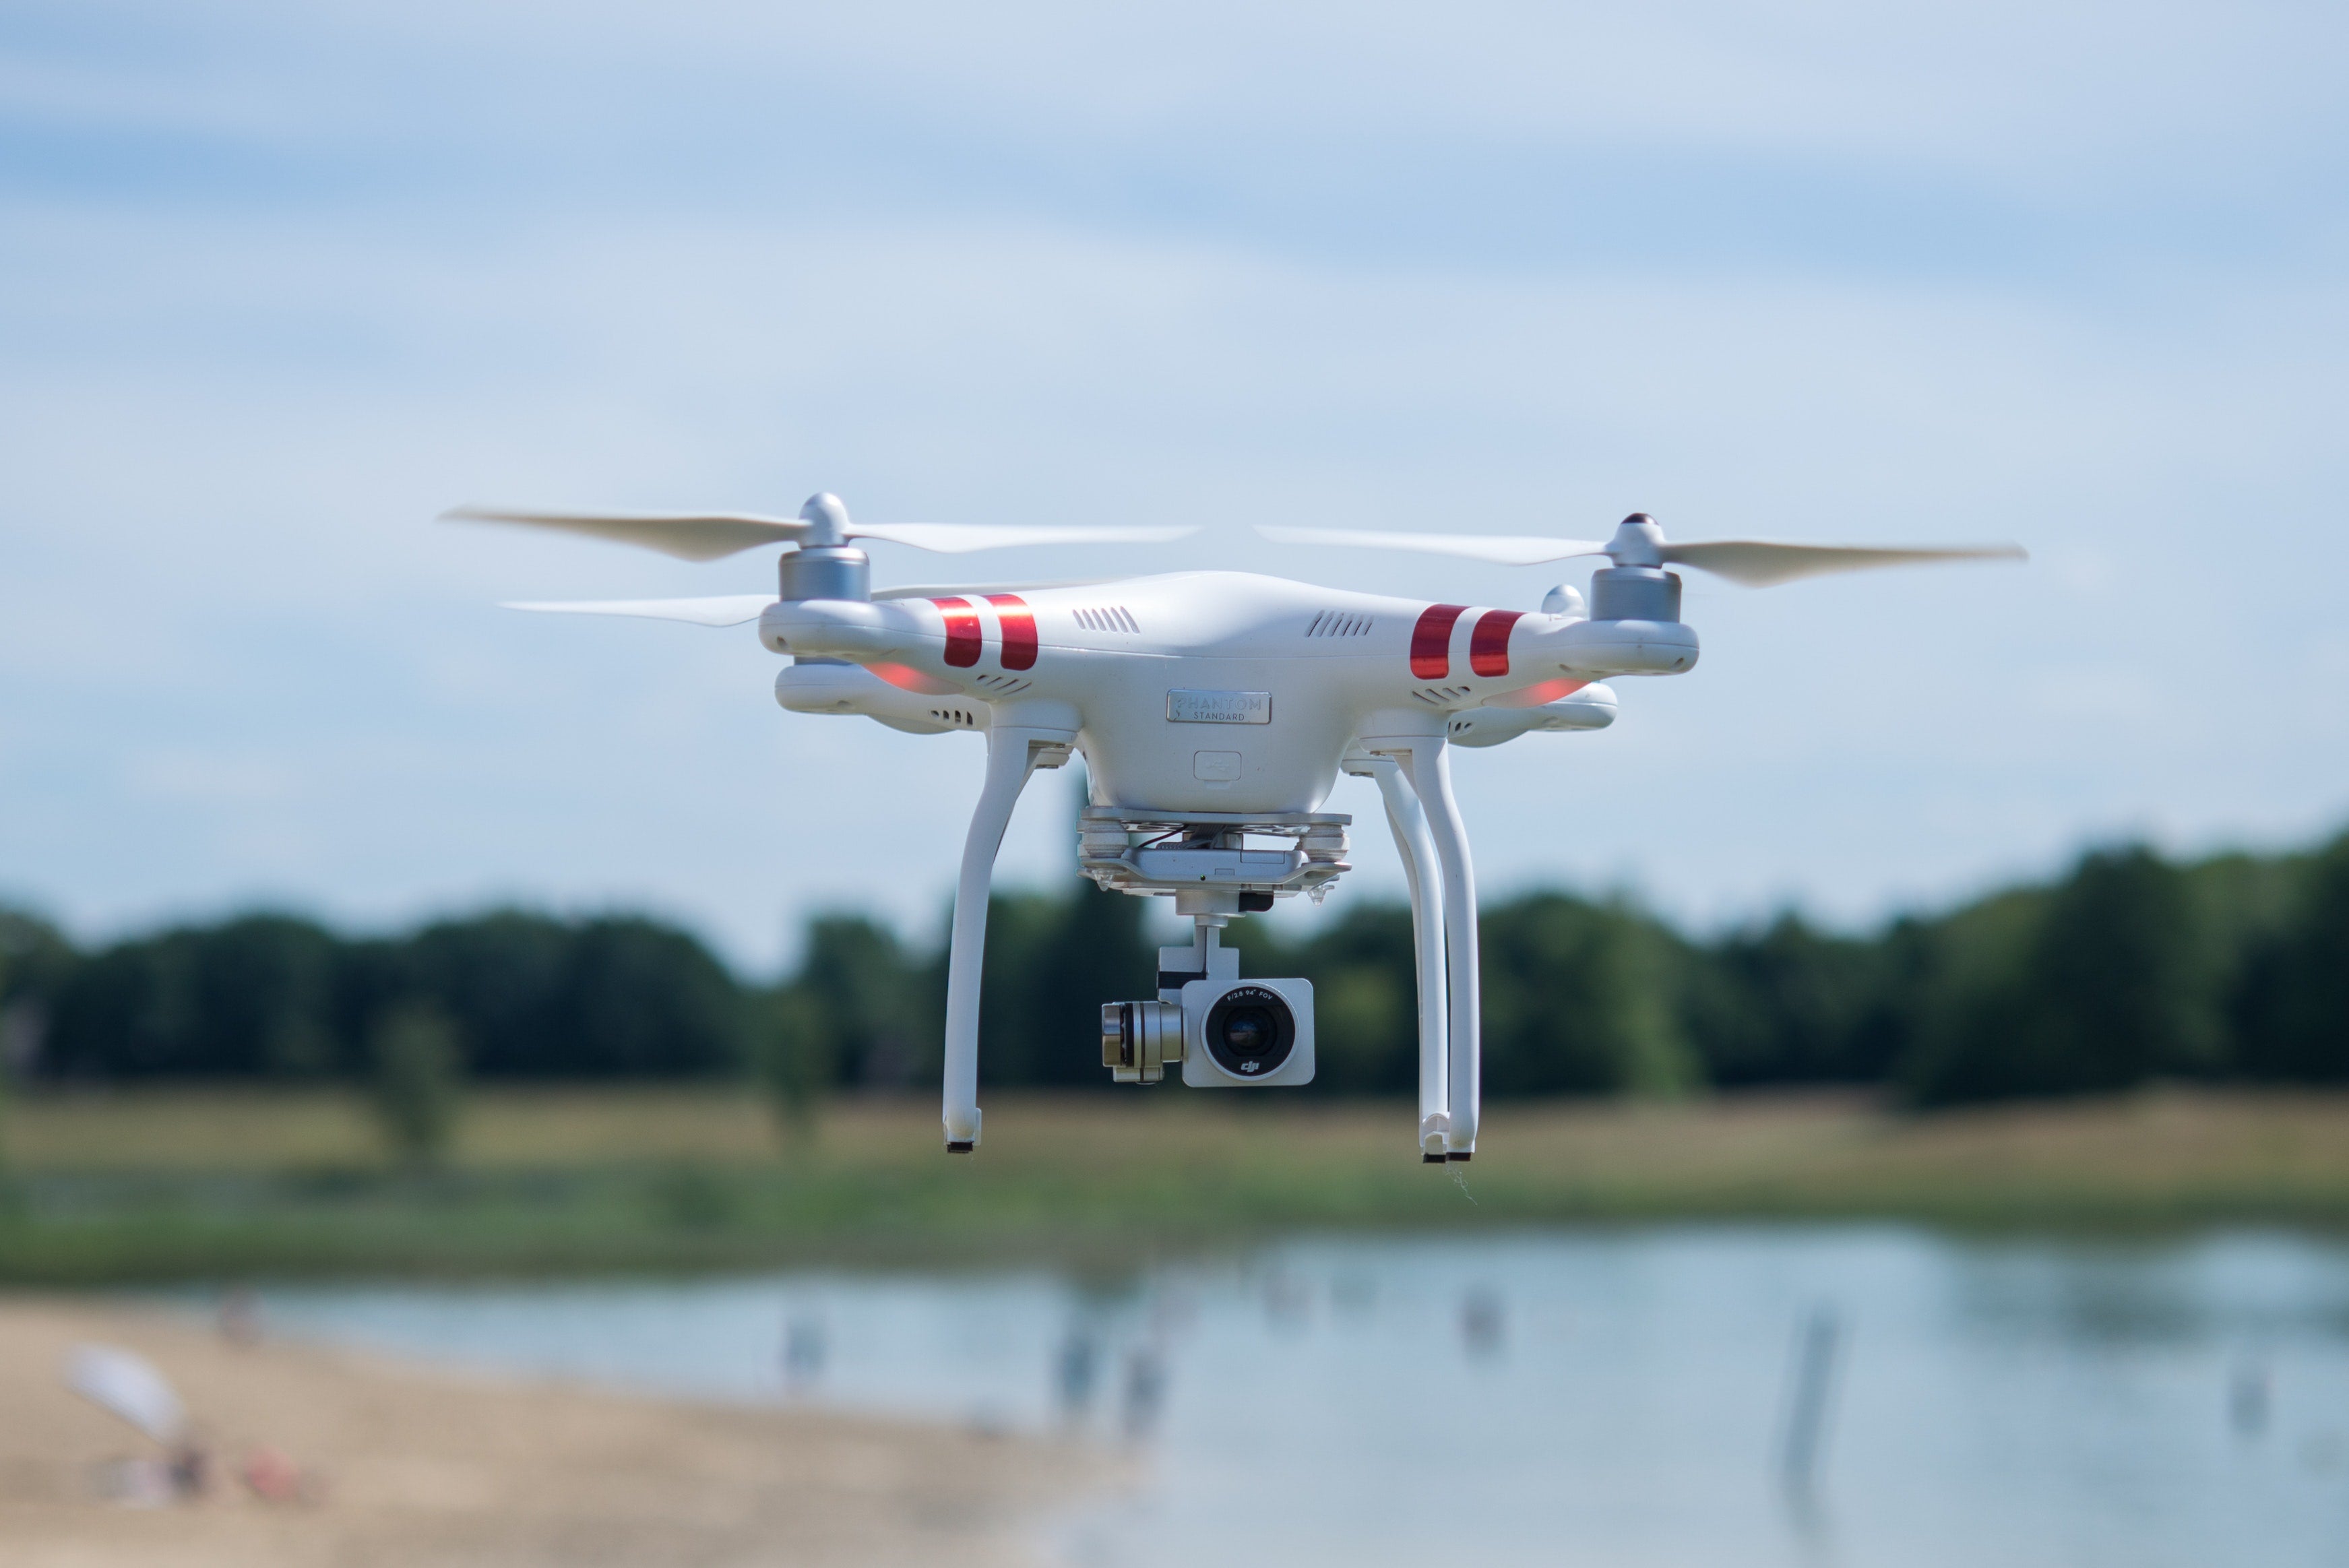 Crean un sistema de carga láser para que los drones vuelen indefinidamente